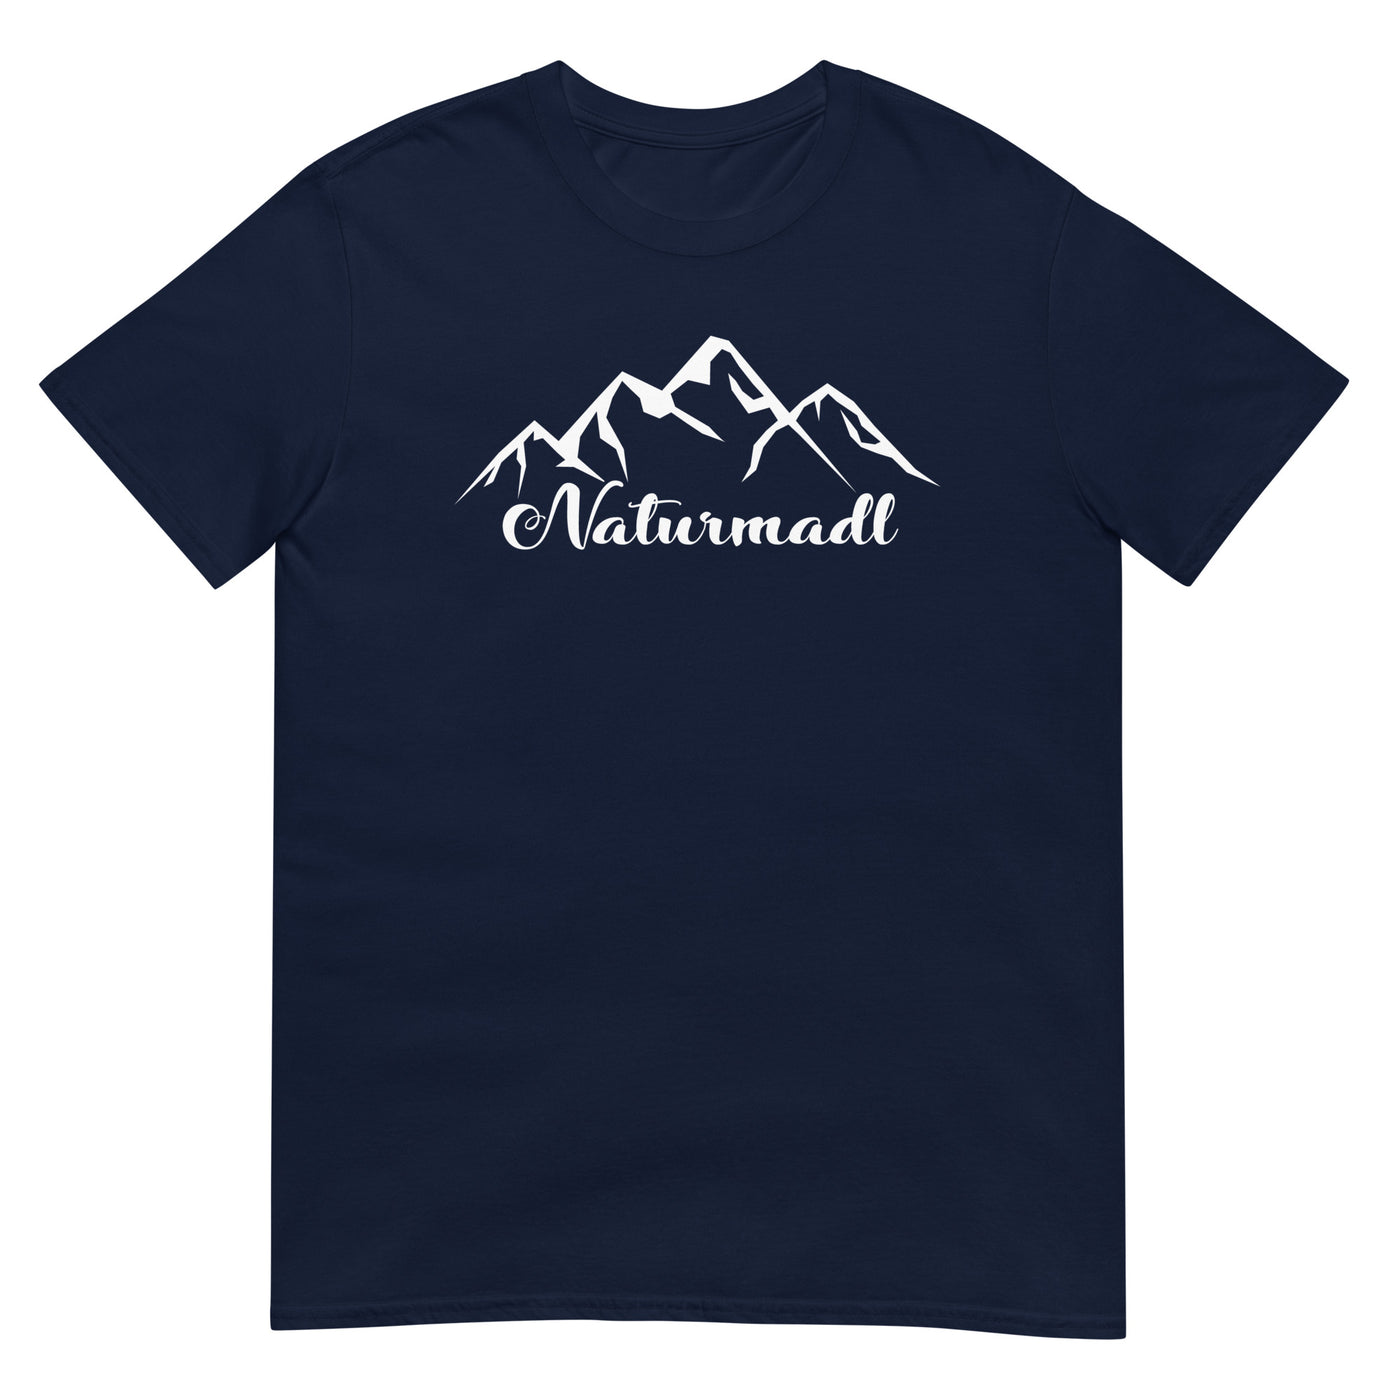 Naturmadl - T-Shirt (Unisex) berge xxx yyy zzz Navy